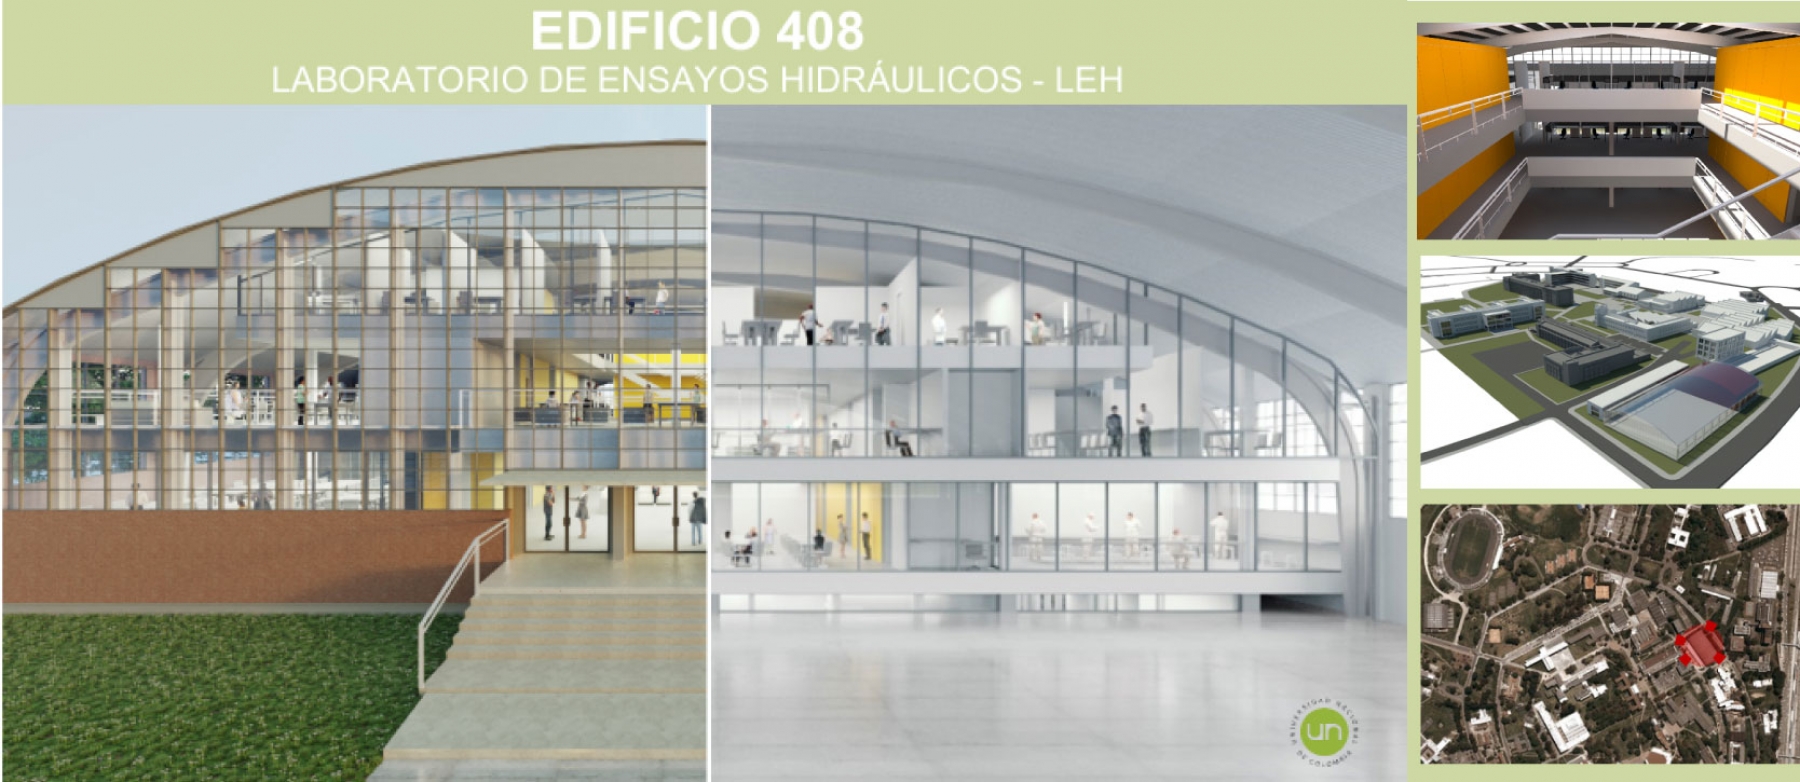 Inician obras de reforzamiento estructural del edificio de laboratorio de Ensayos Hidráulicos de la Facultad.